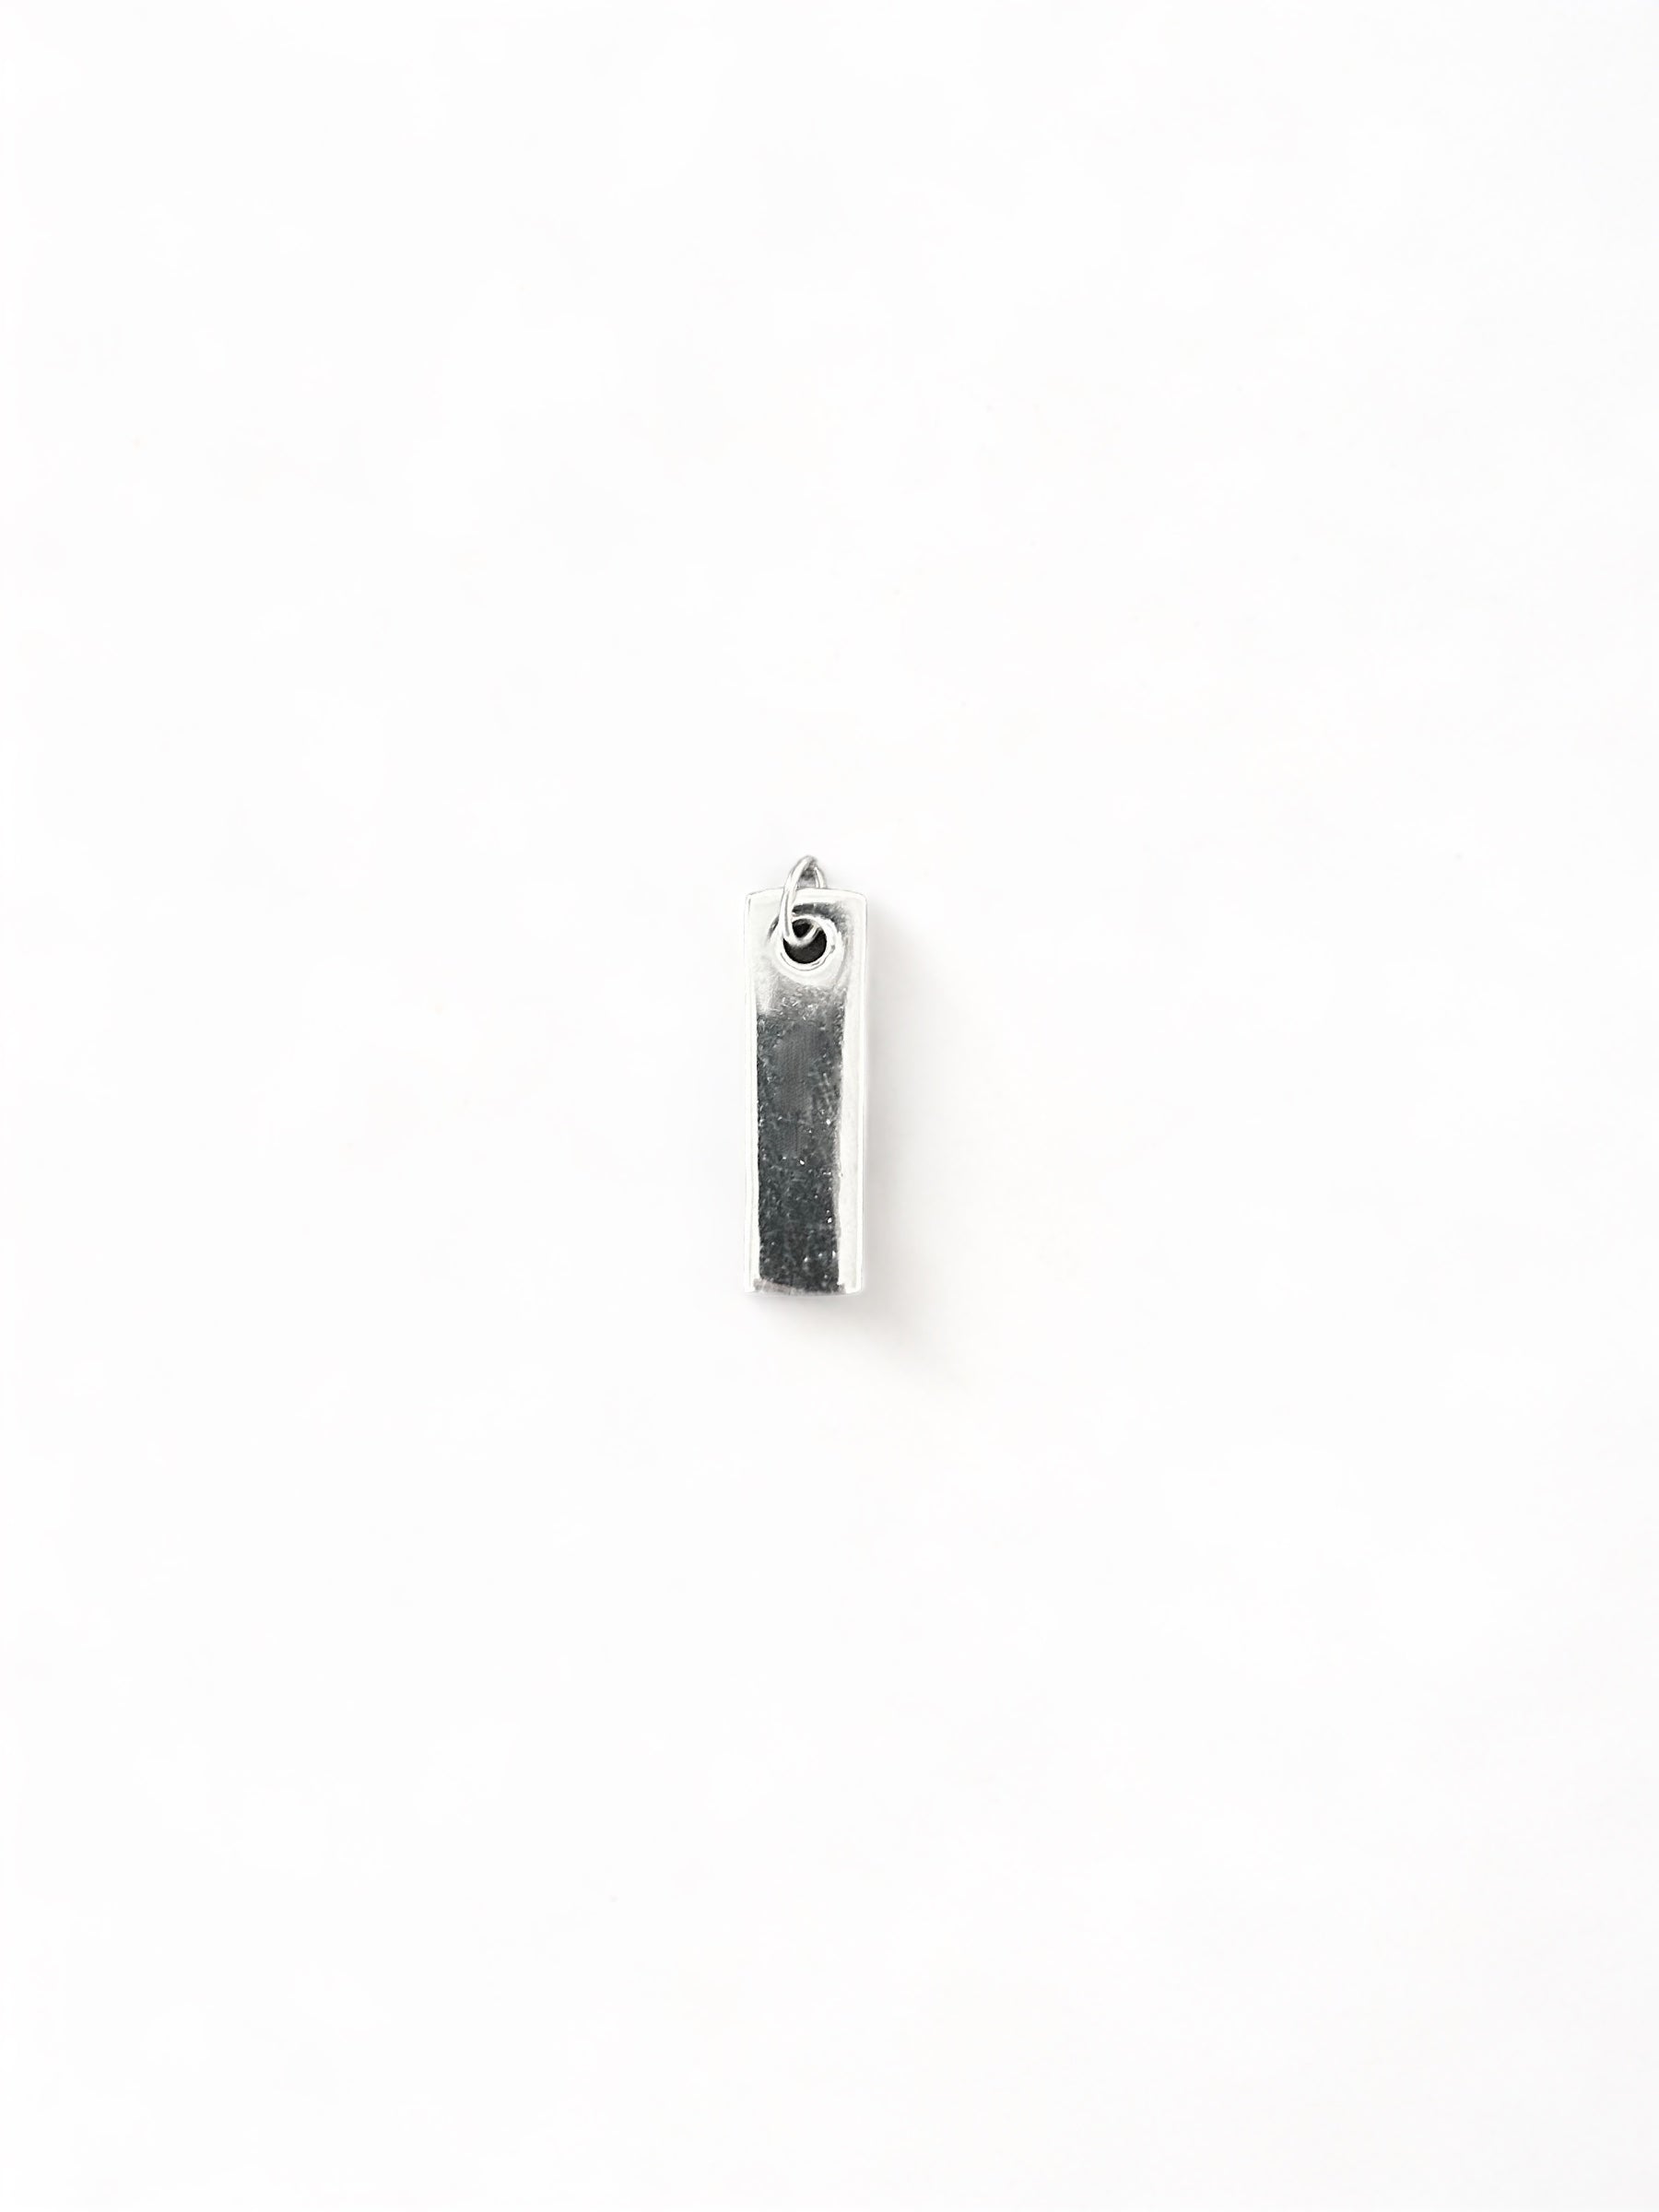 Square minimalist pendant - 925 silver